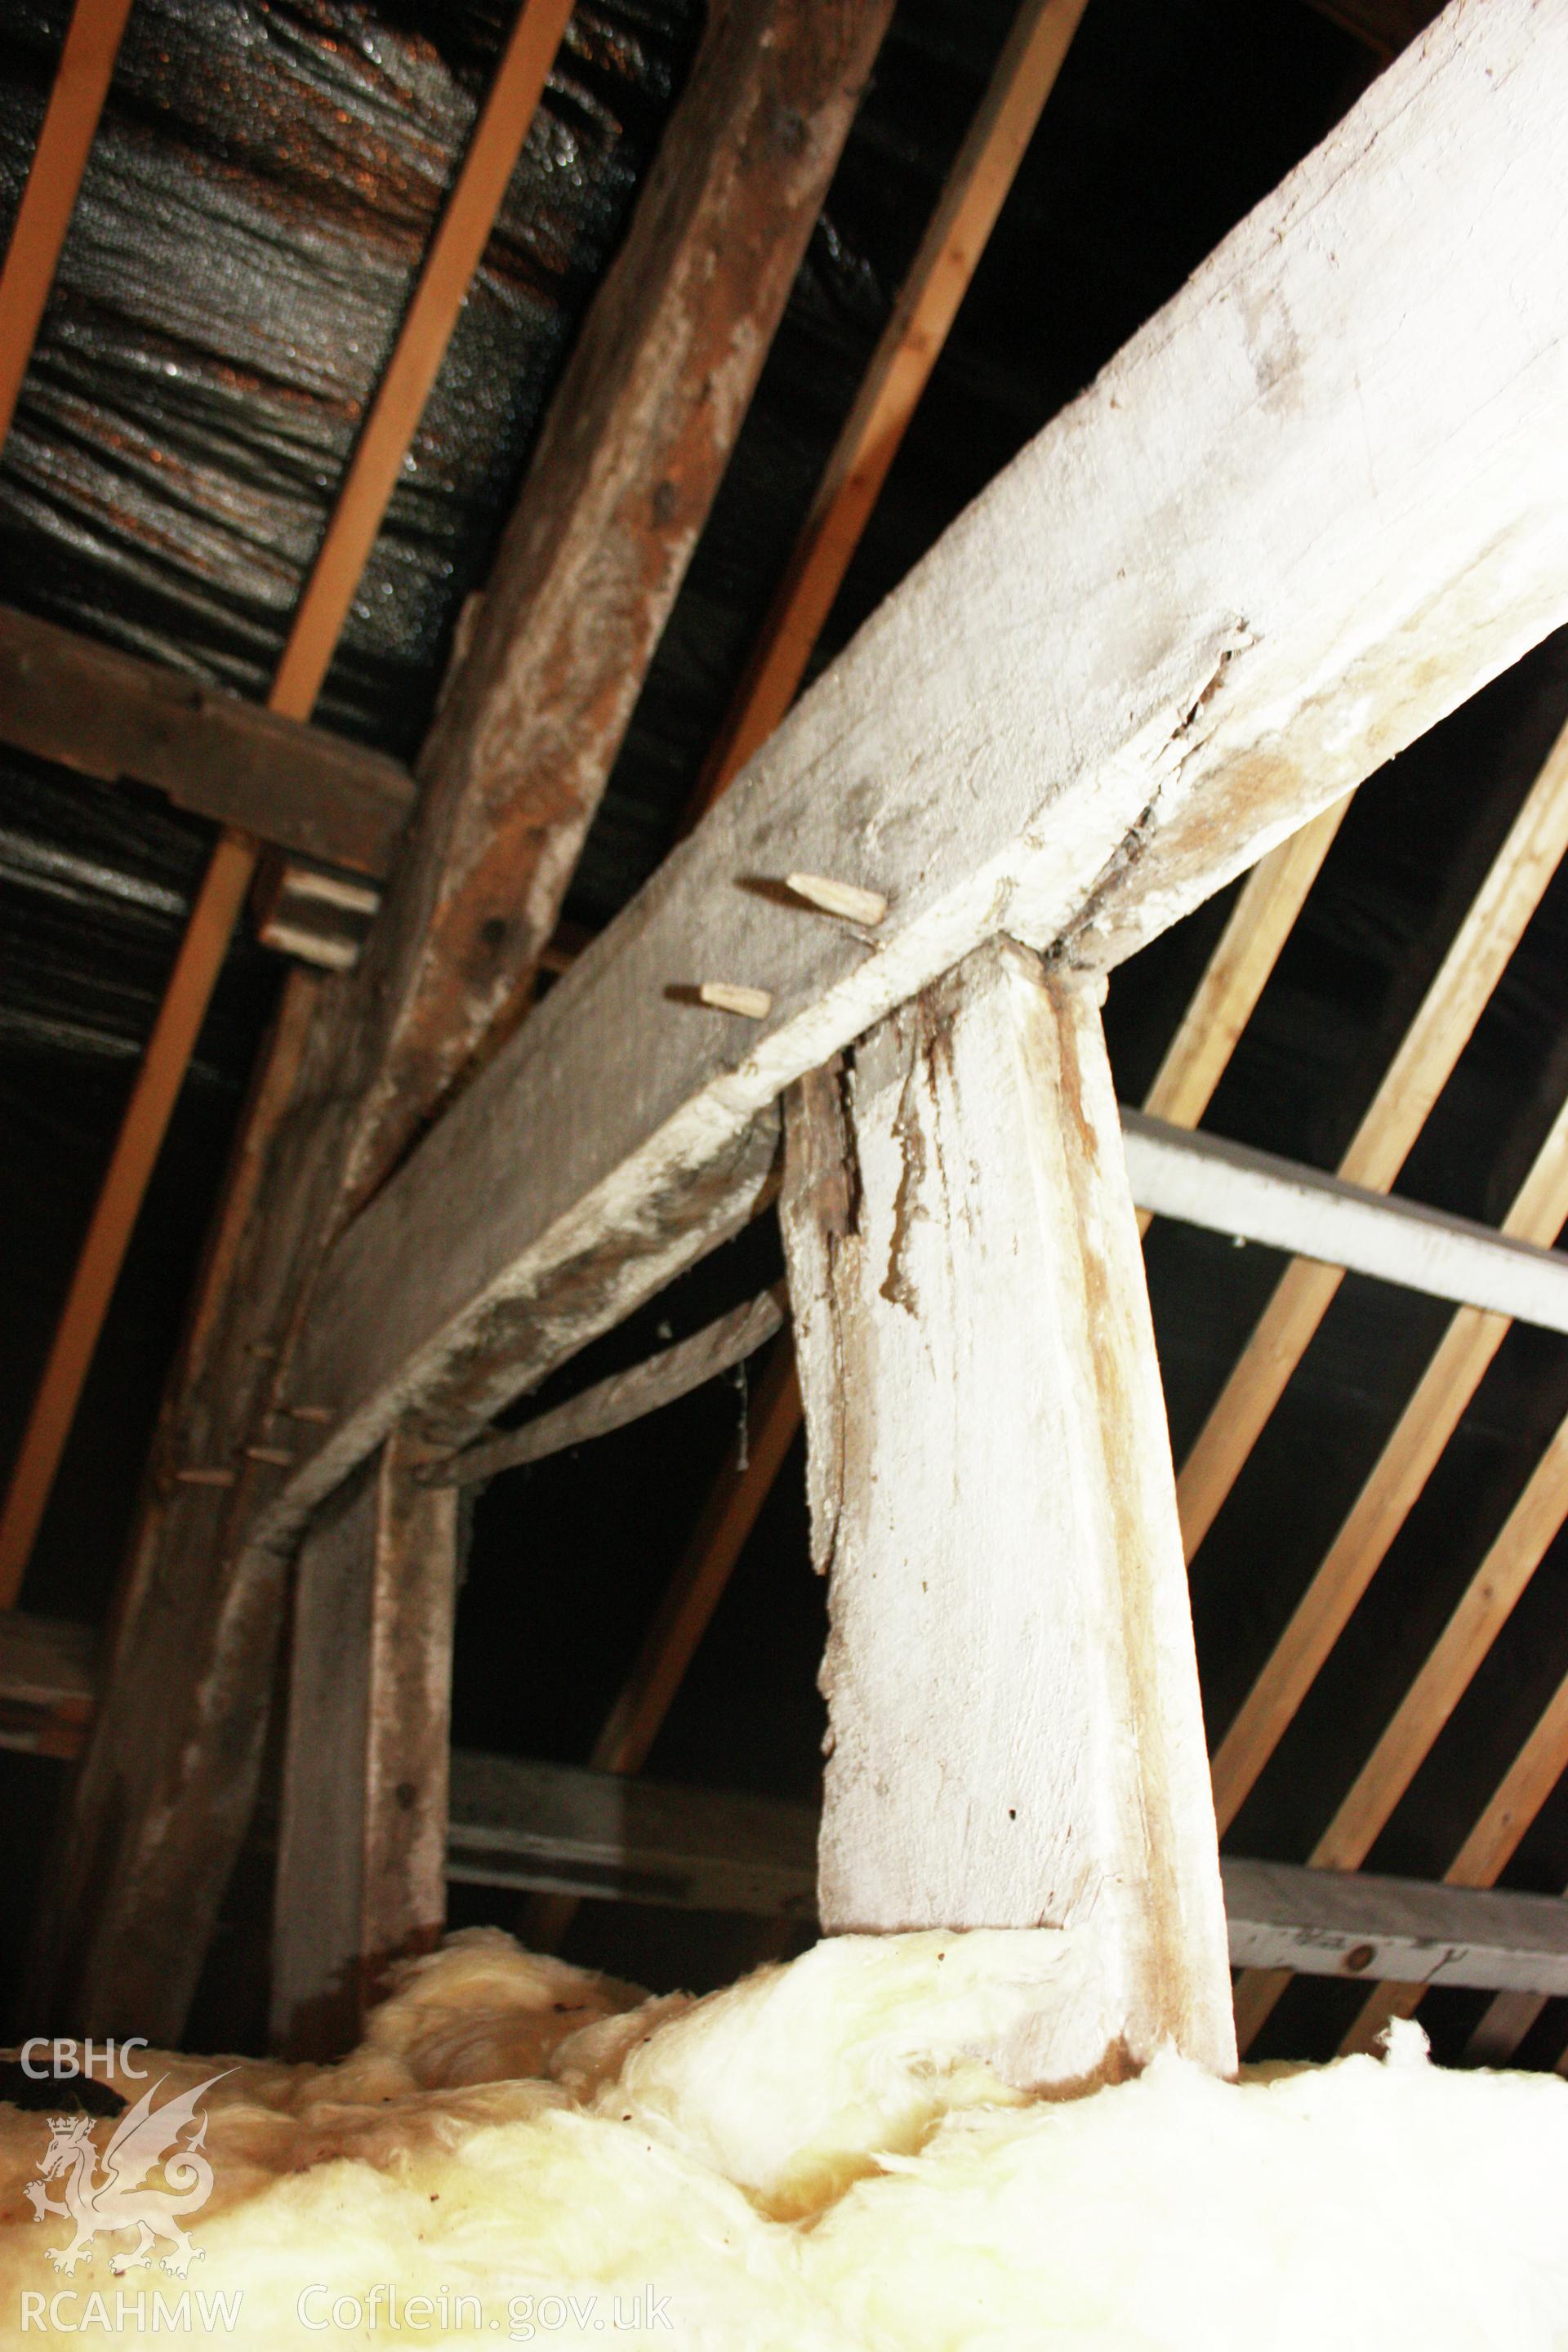 Interior, attic showing roof trusses.